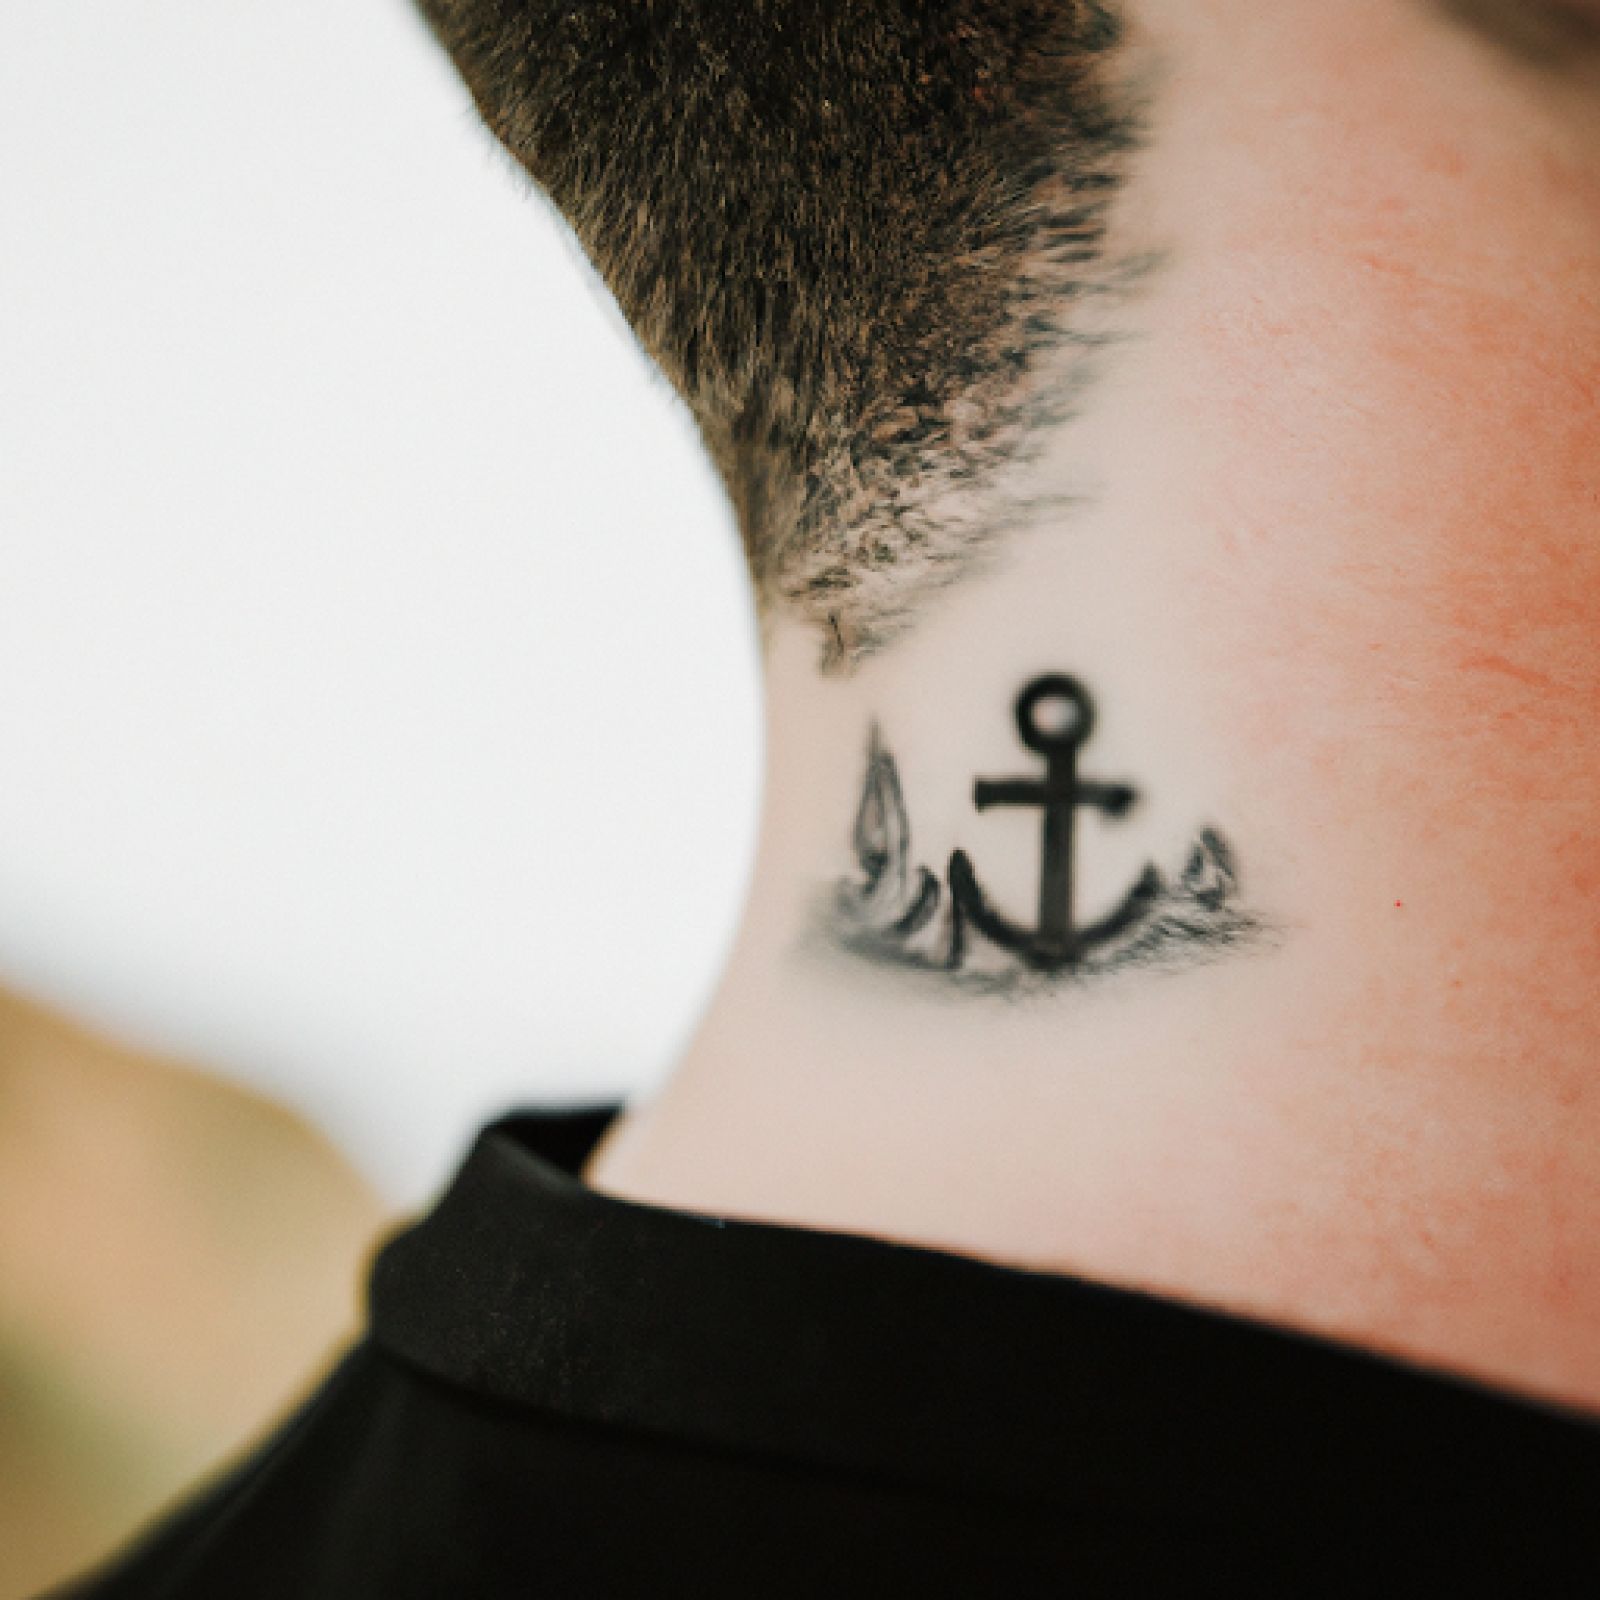 Ship tattoo on neck for men